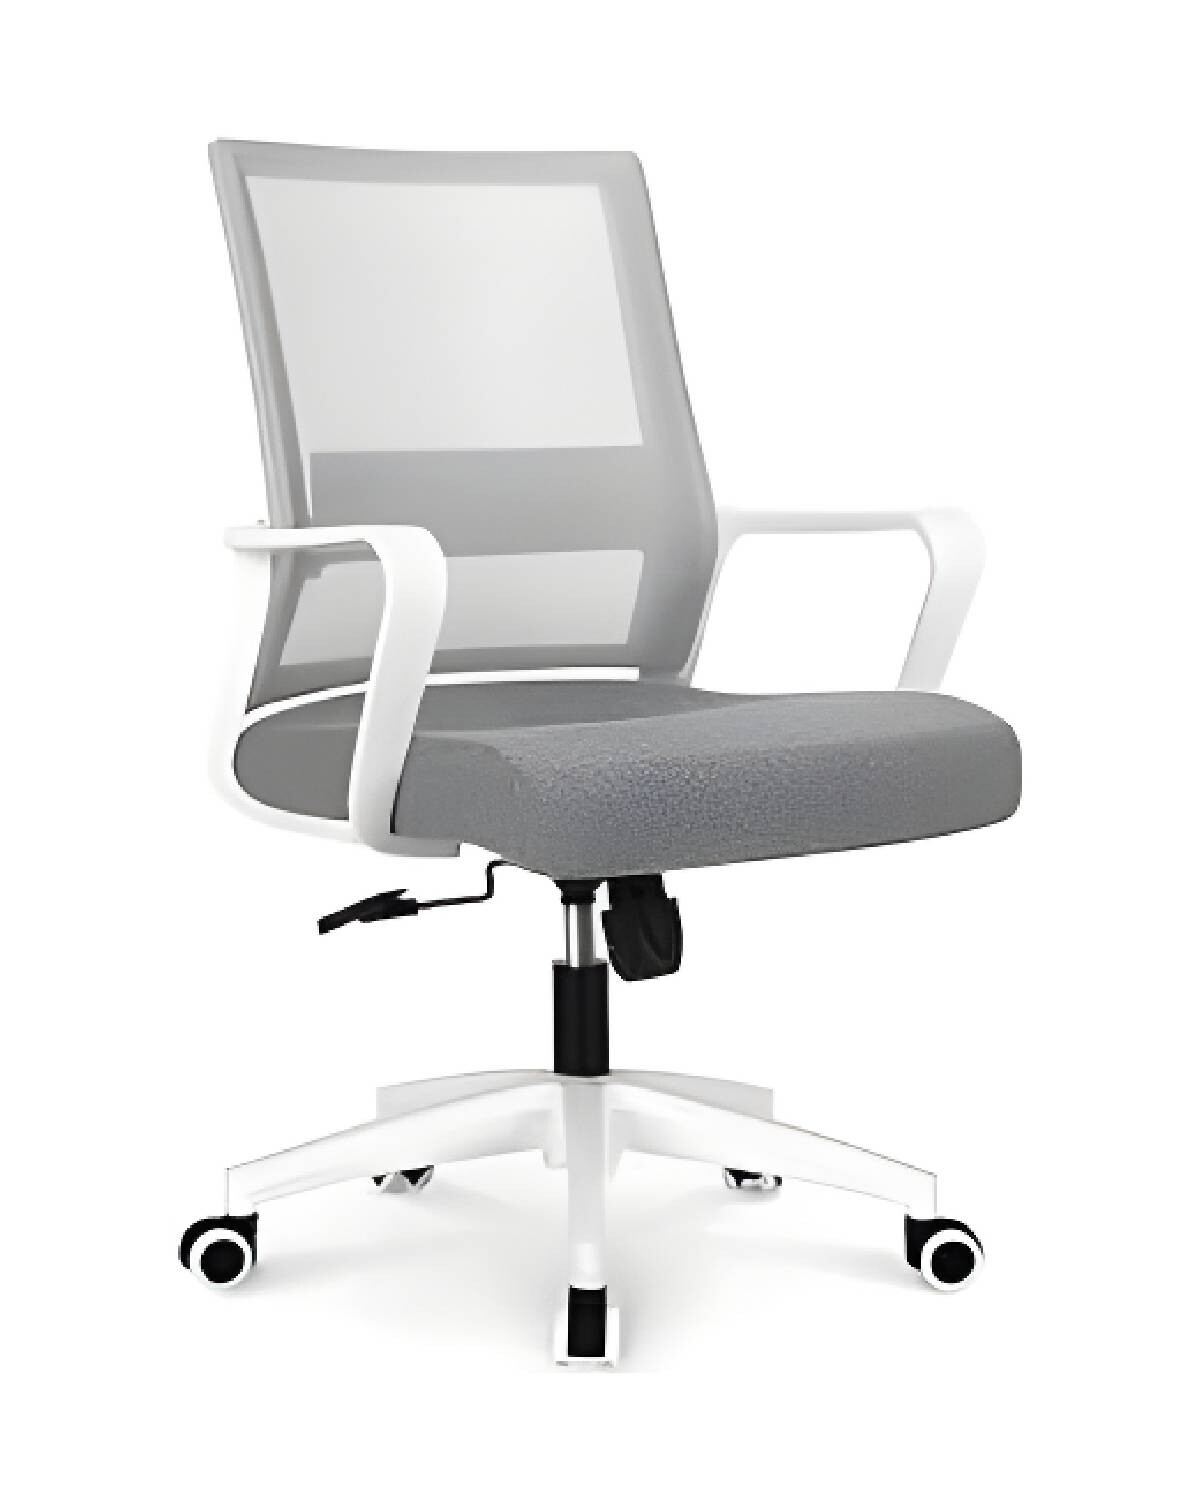 https://f.fcdn.app/imgs/b9397a/electroventas.com.uy/elecuy/5fc6/original/catalogo/ZGS-996GRBL1/1500-1500/silla-de-escritorio-oficina-lumax-ryan-gris-blanco.jpg